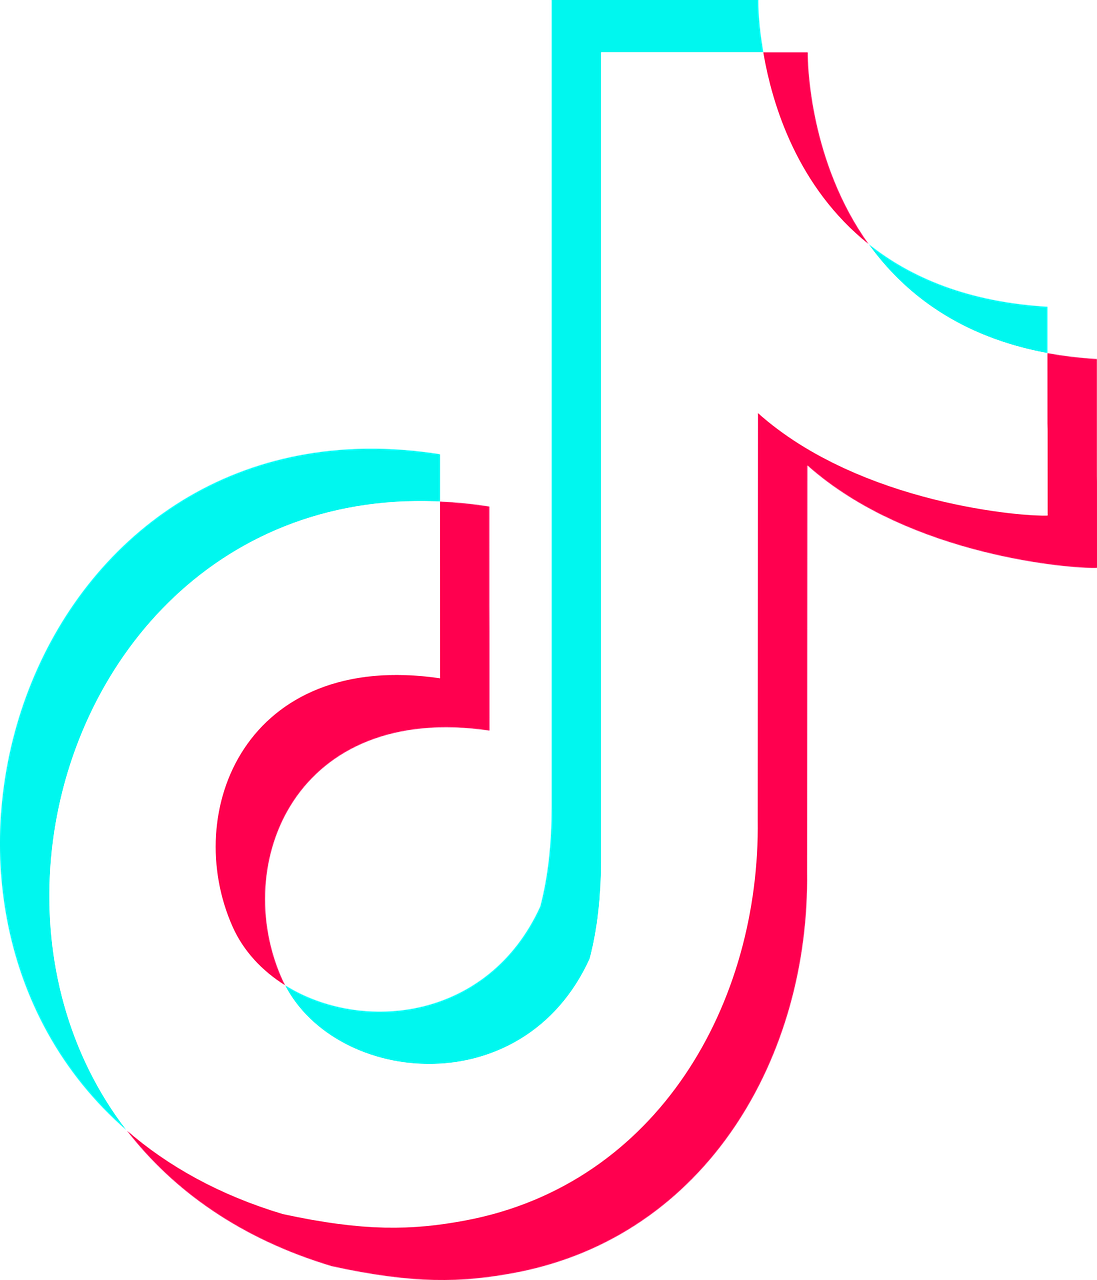 First Logo